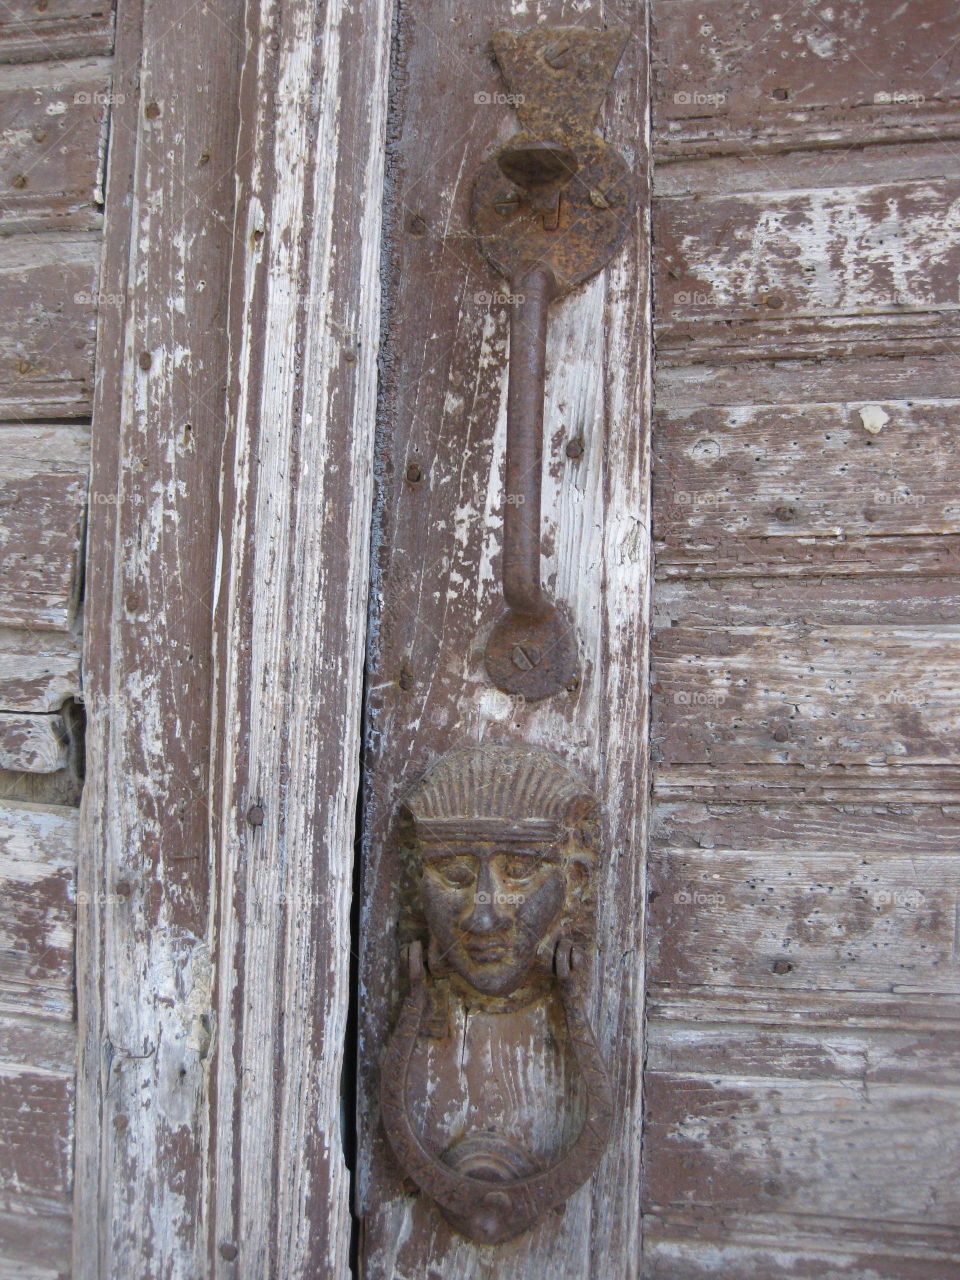 Greek door